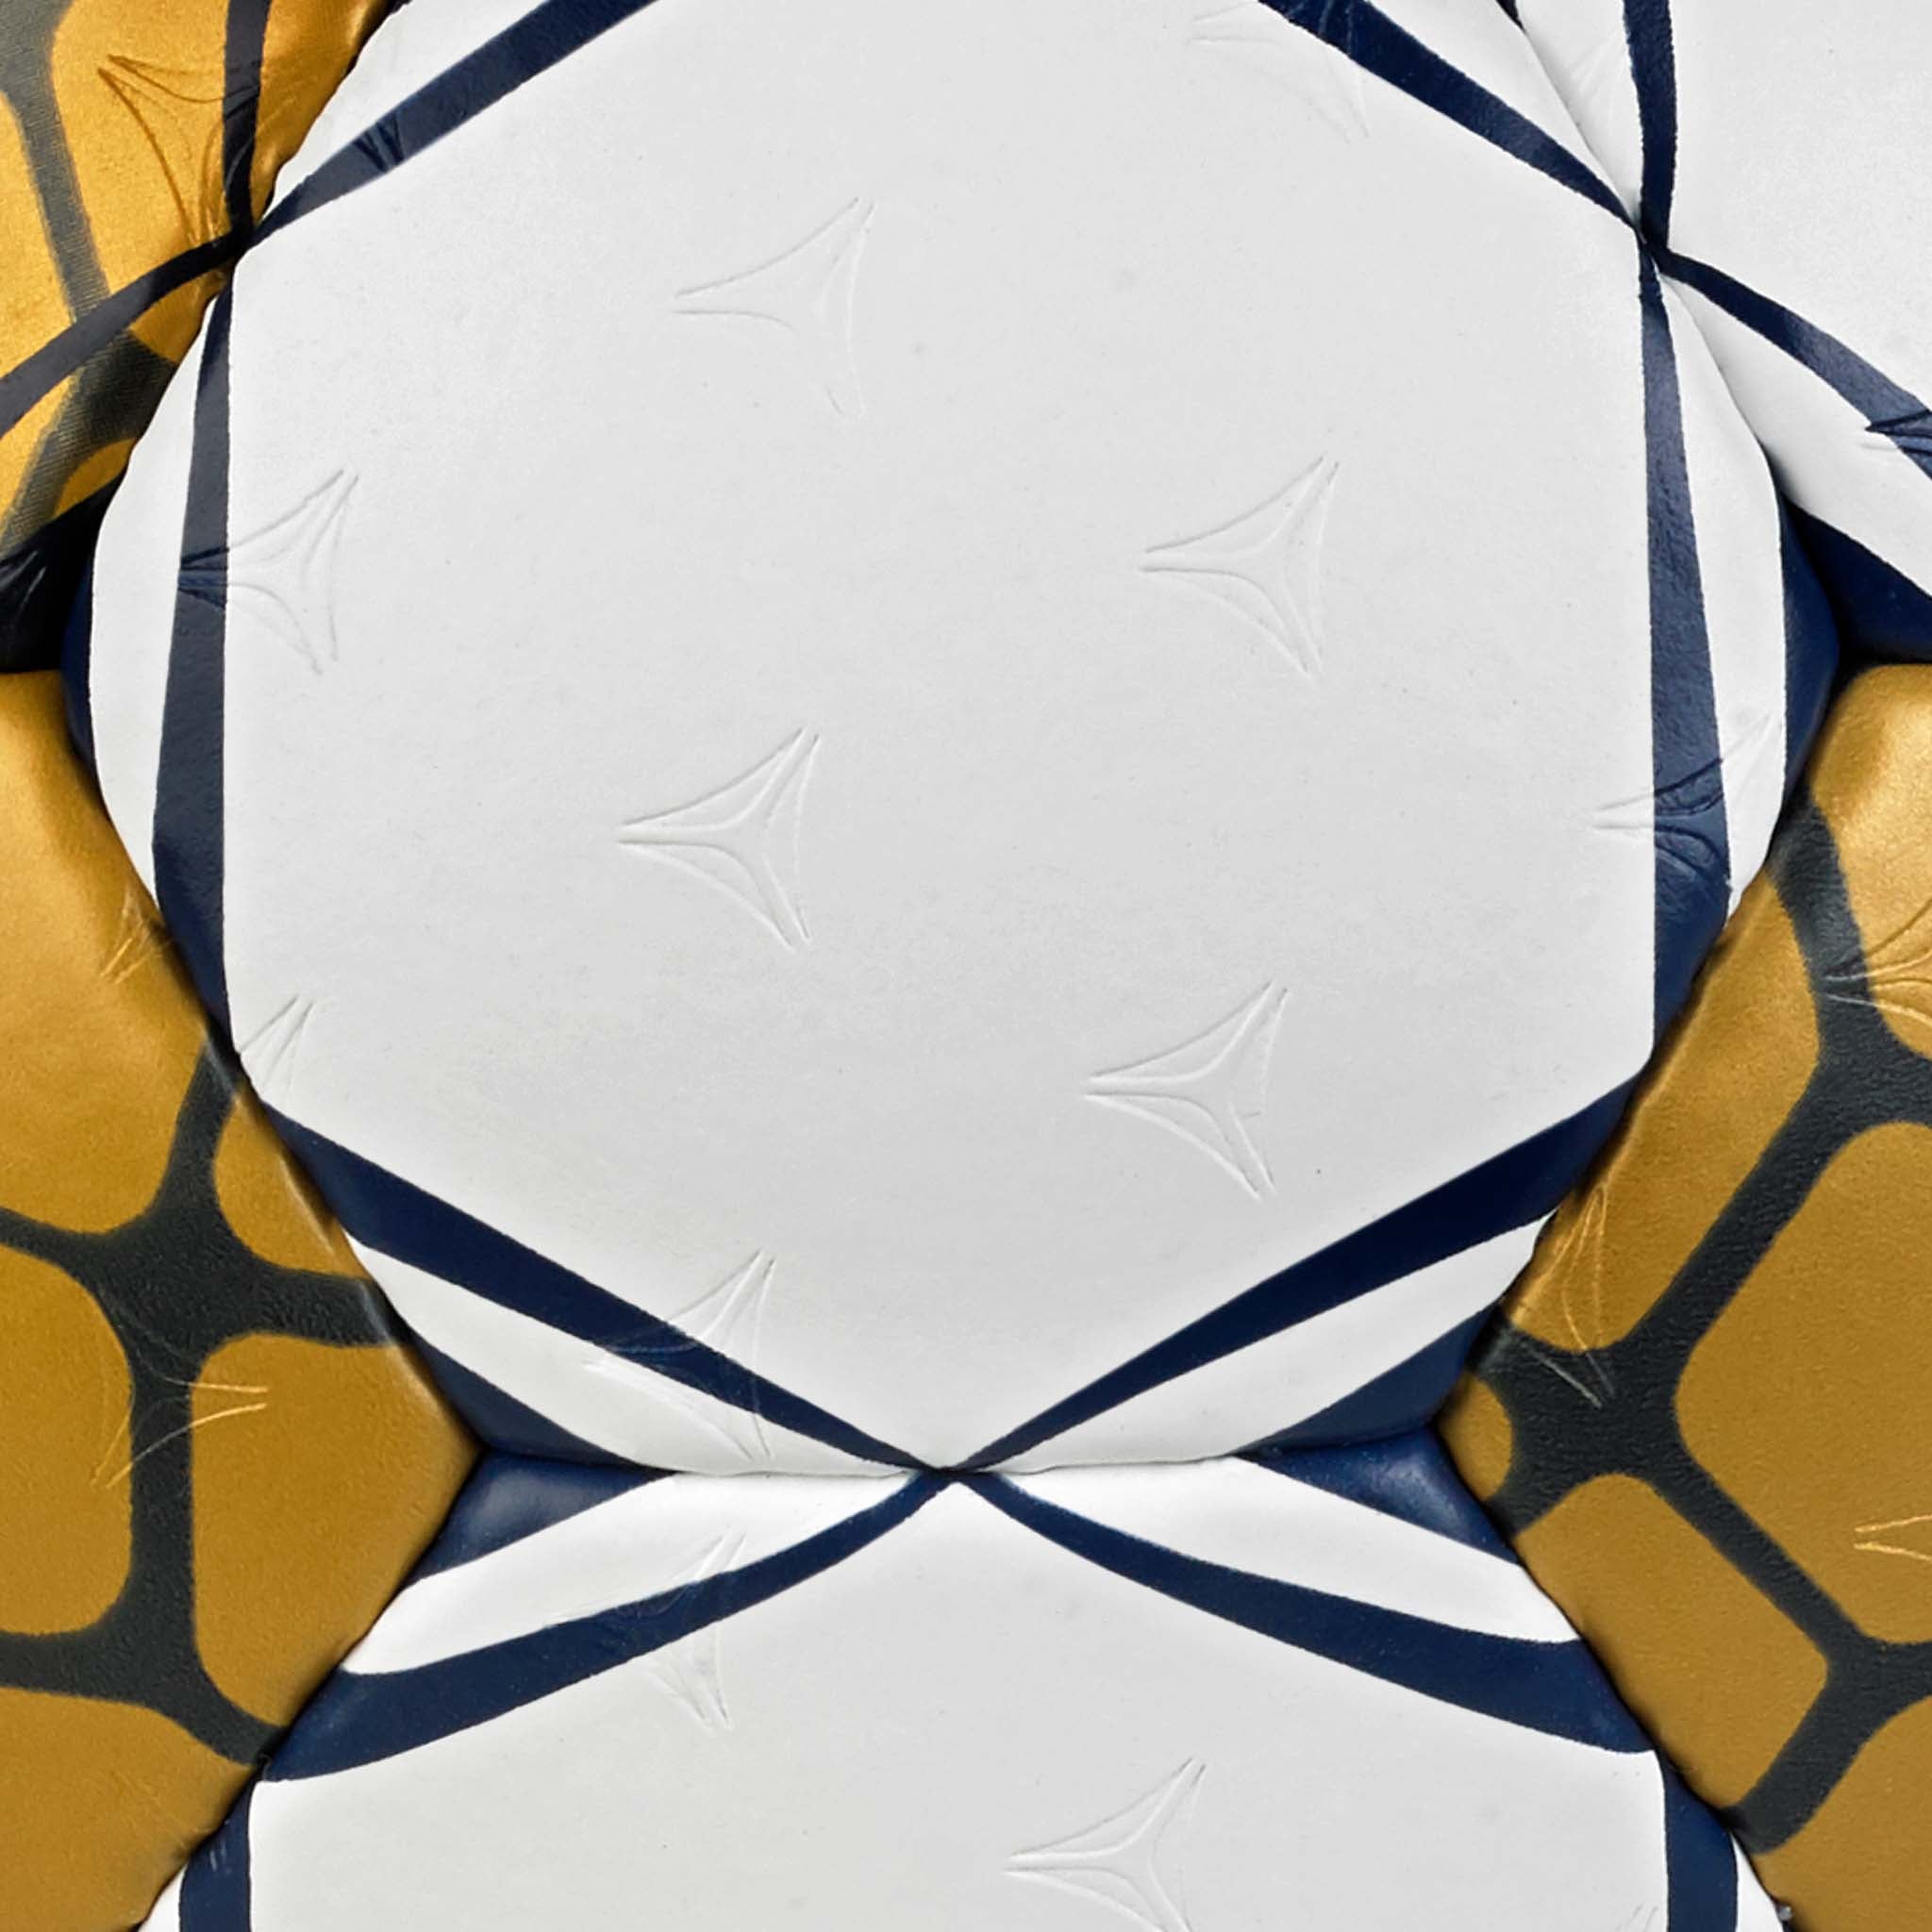 Handboll - Replica EHF Champions League #färg_ #färg_vitt/guld #färg_vitt/guld